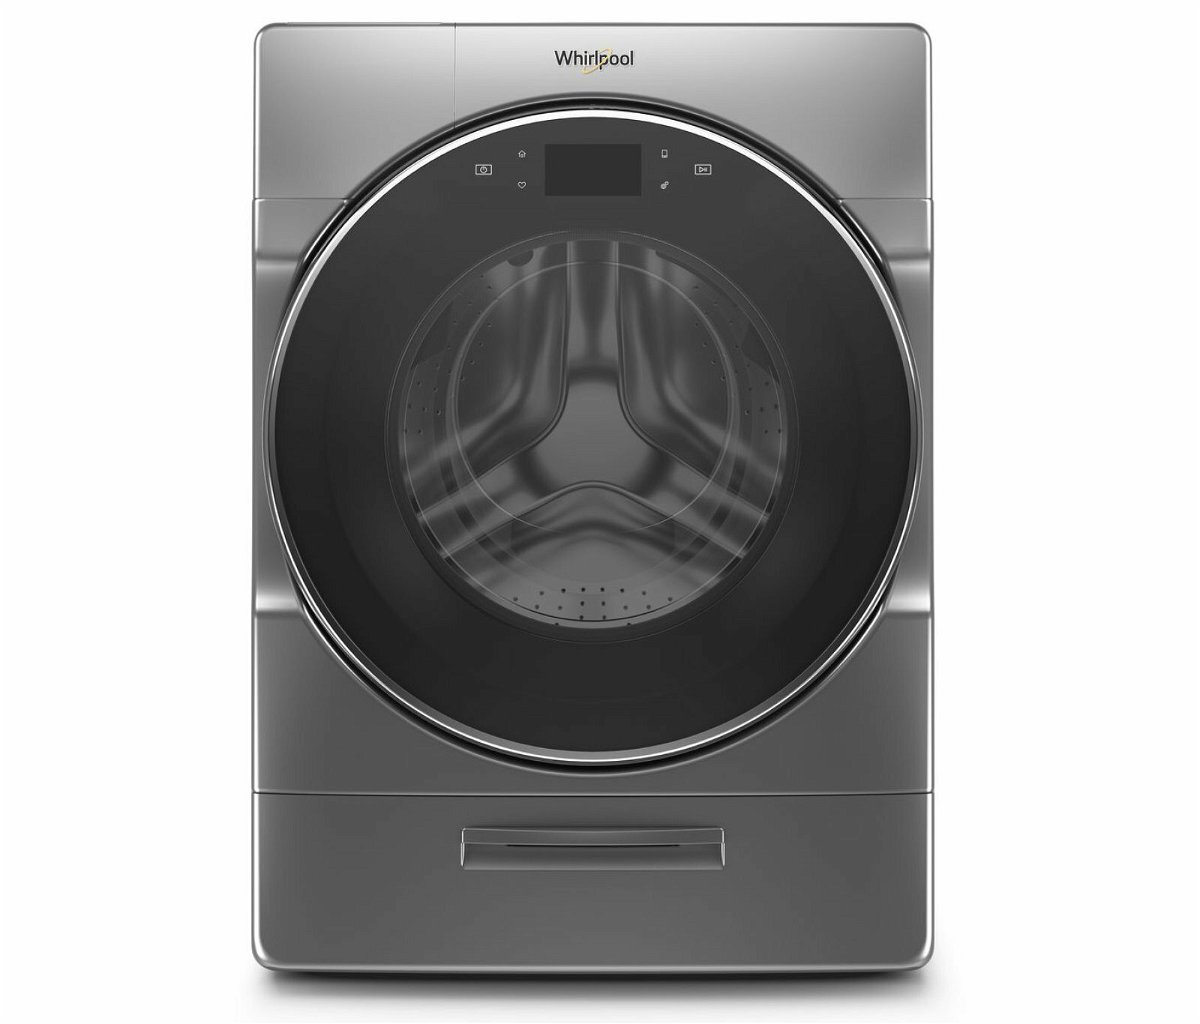 Immagine stampa della nuova lavatrice e asciugatrice smart di Whirlopool presentata al CES 2019